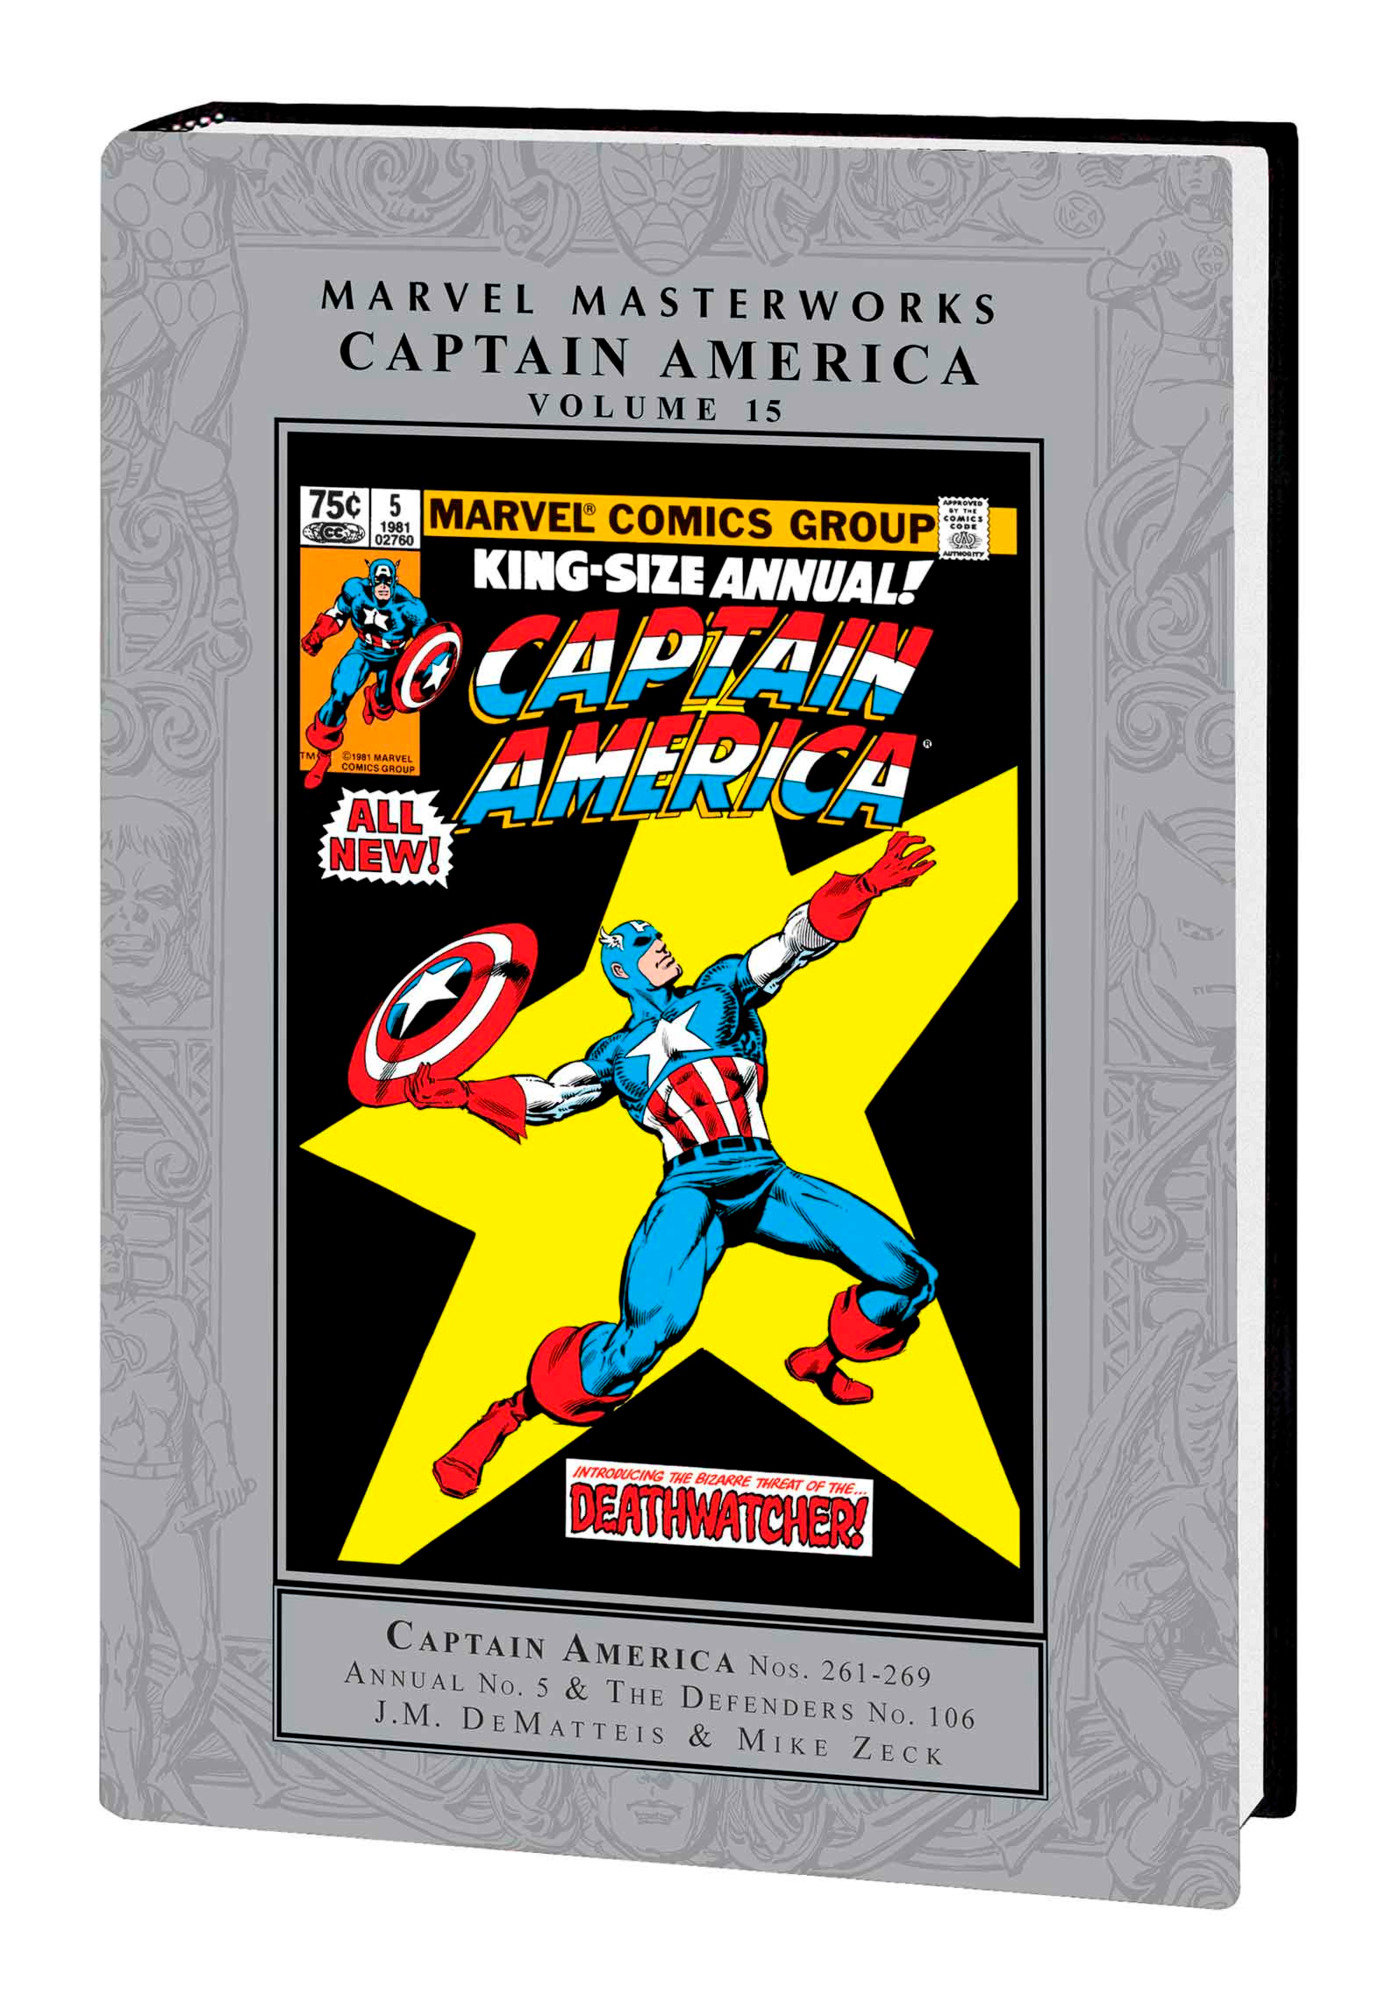 Marvel Masterworks Captain America Hardcover Volume 15